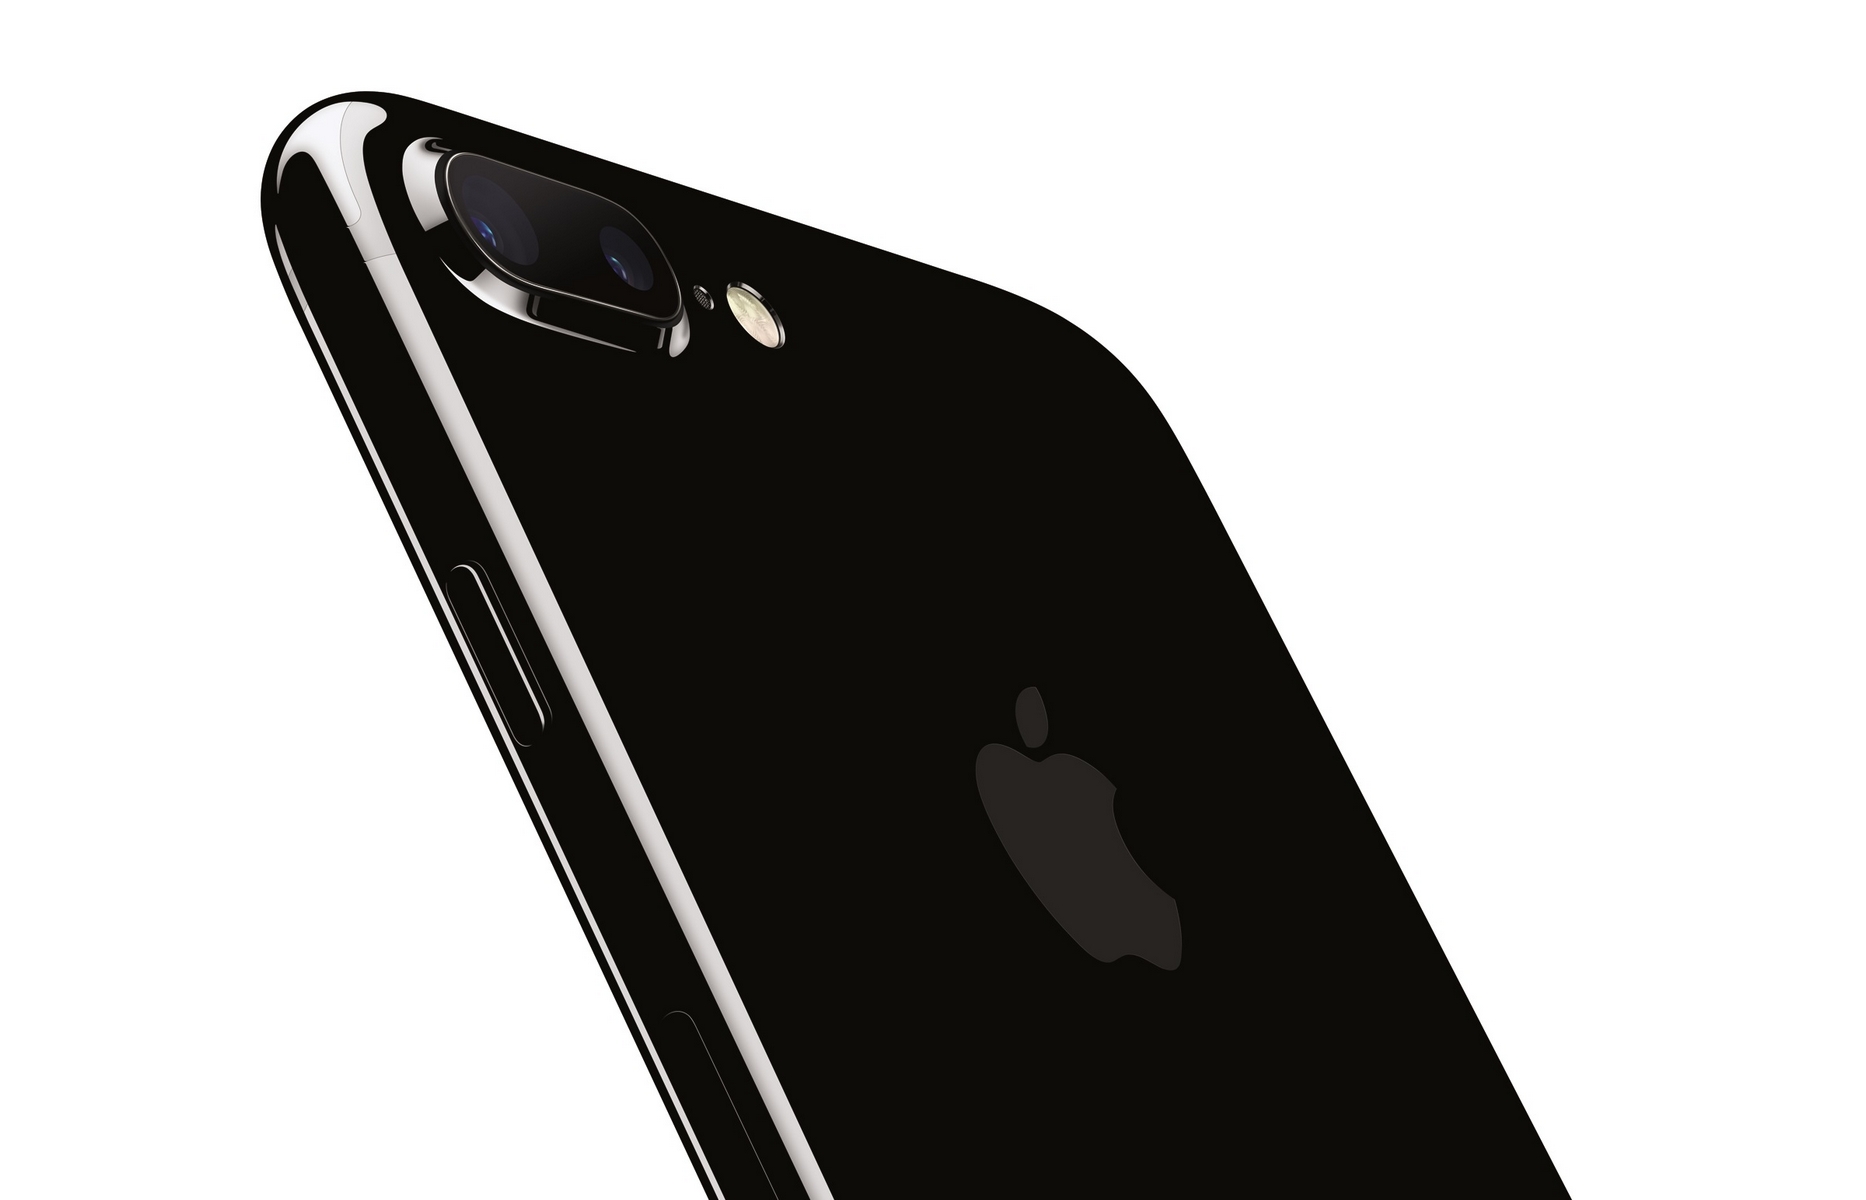 iPhone 7 Plus ufficiale: scheda tecnica, prezzo ed uscita in Italia